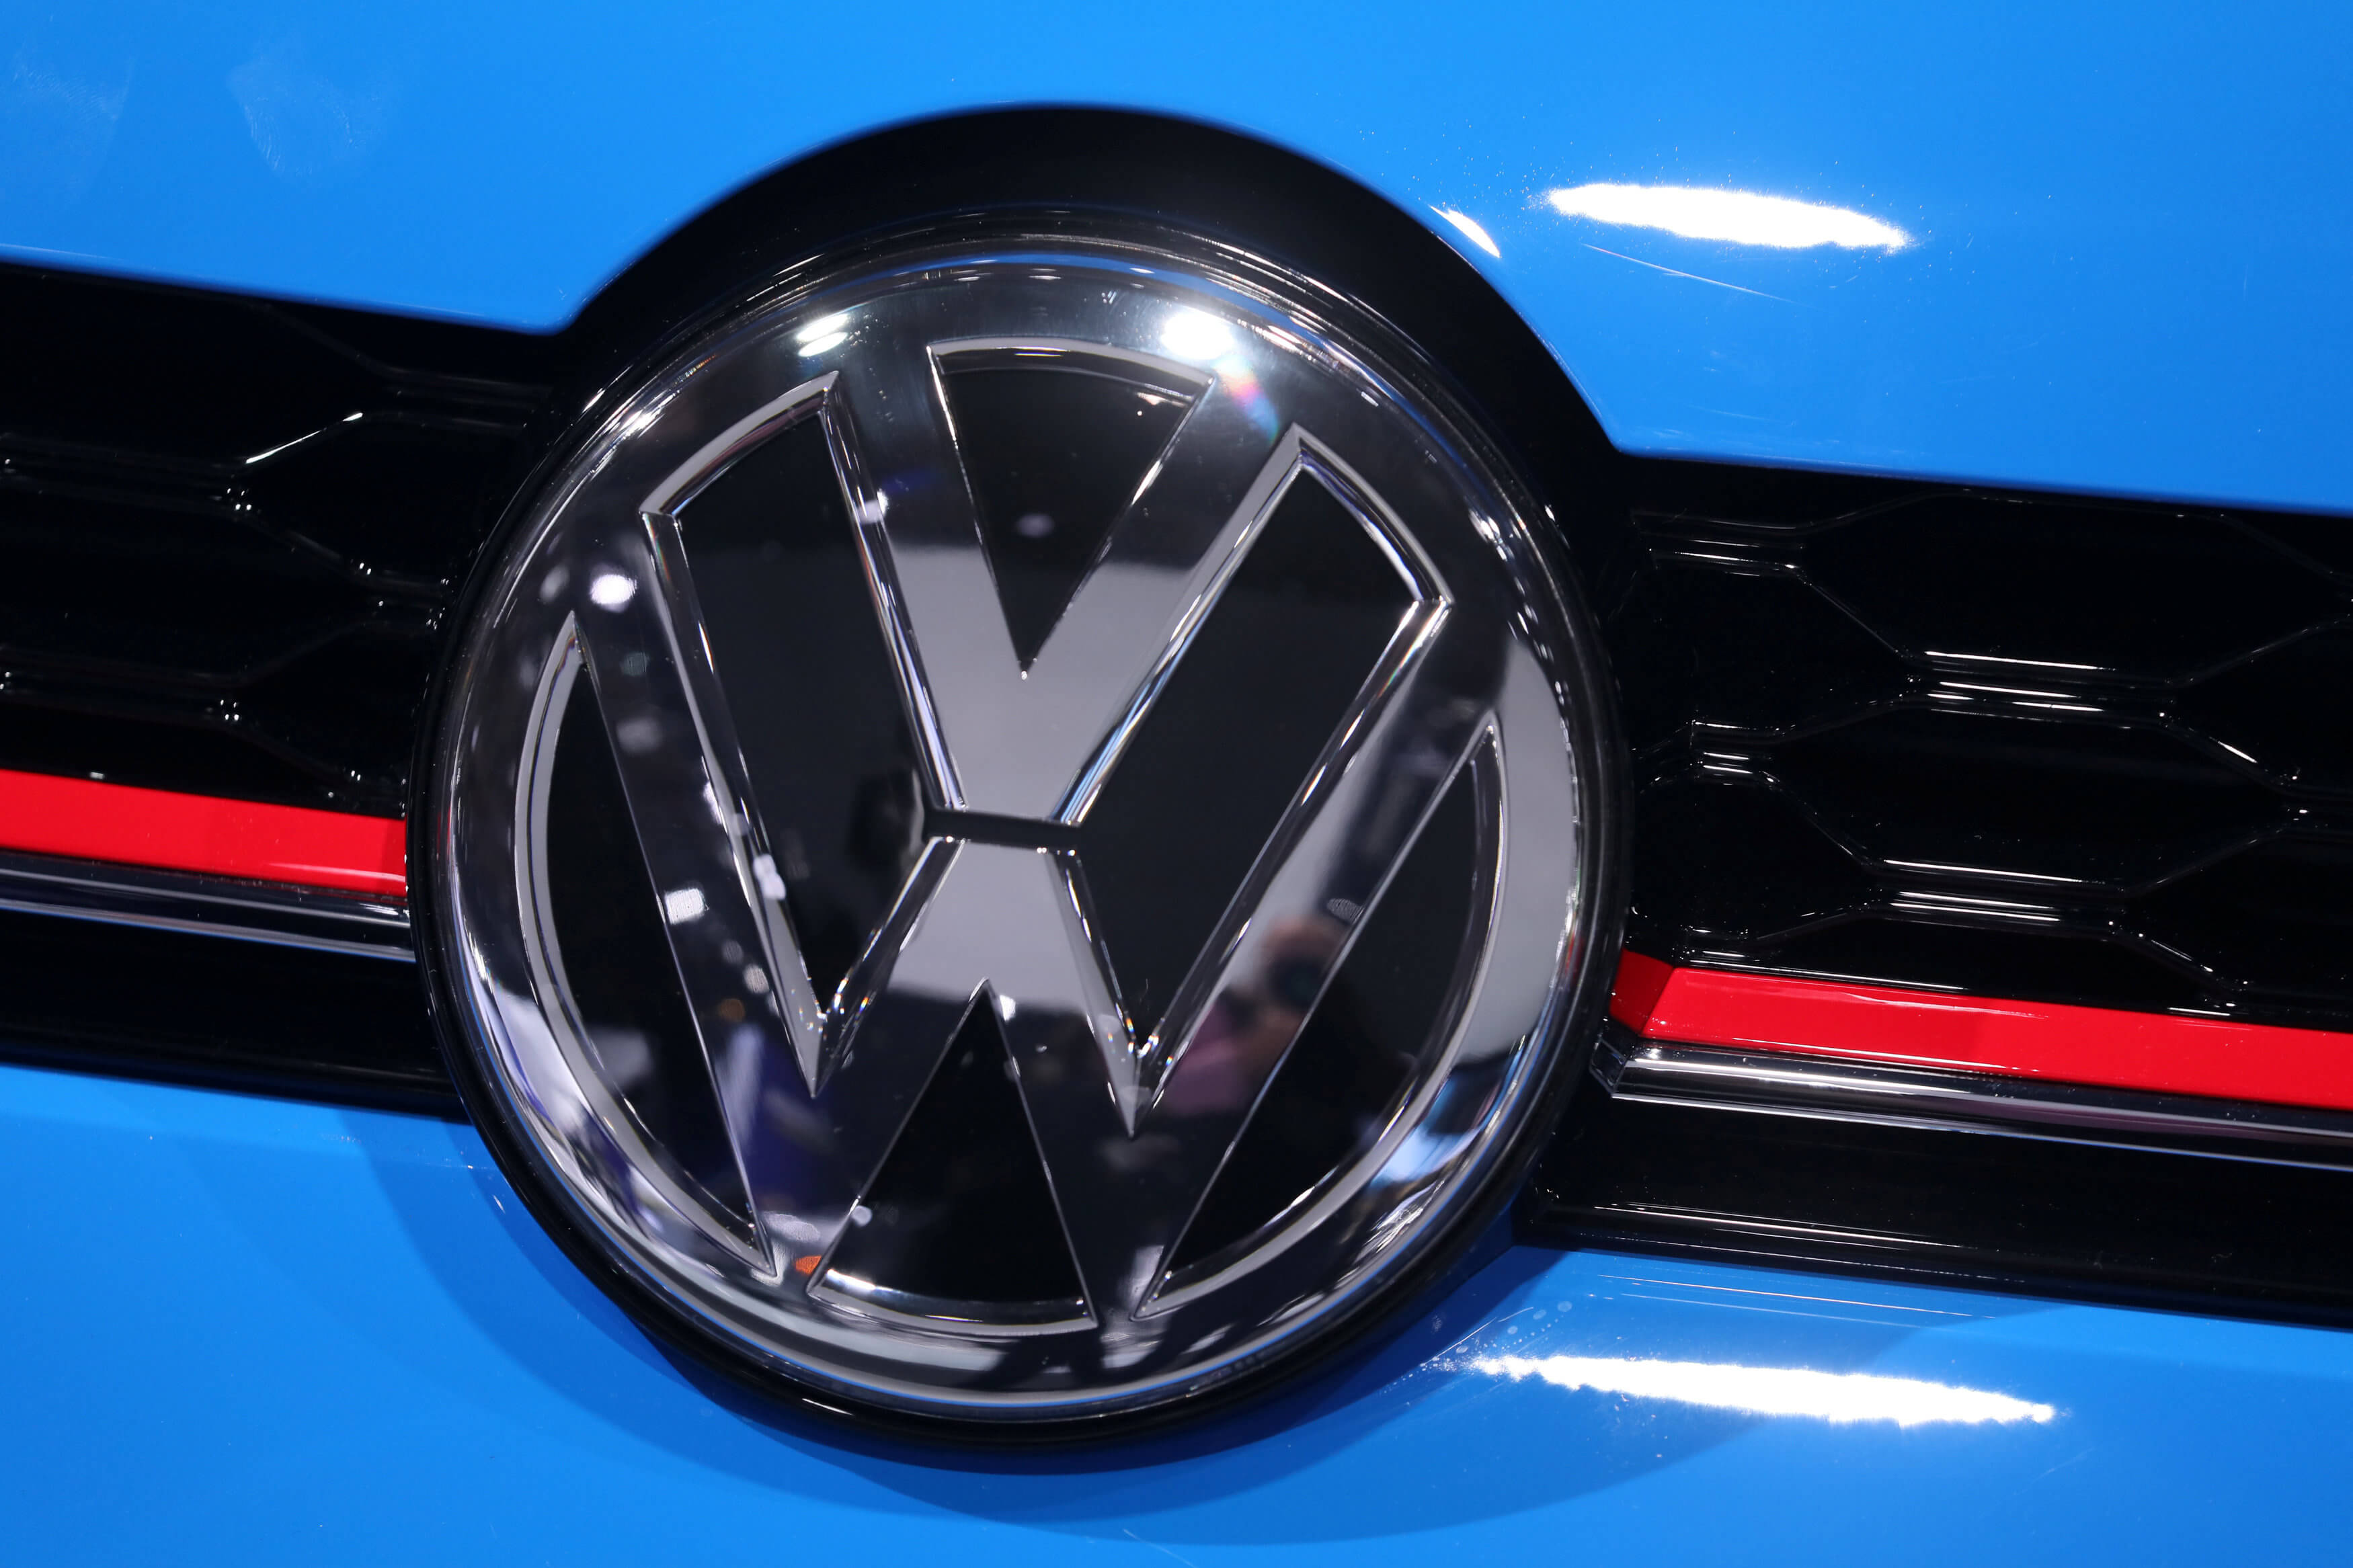 ΗΠΑ: Αγωγή της επιτροπής Κεφαλαιαγοράς σε βάρος της Volkswagen για τα ντιζελοκίνητα